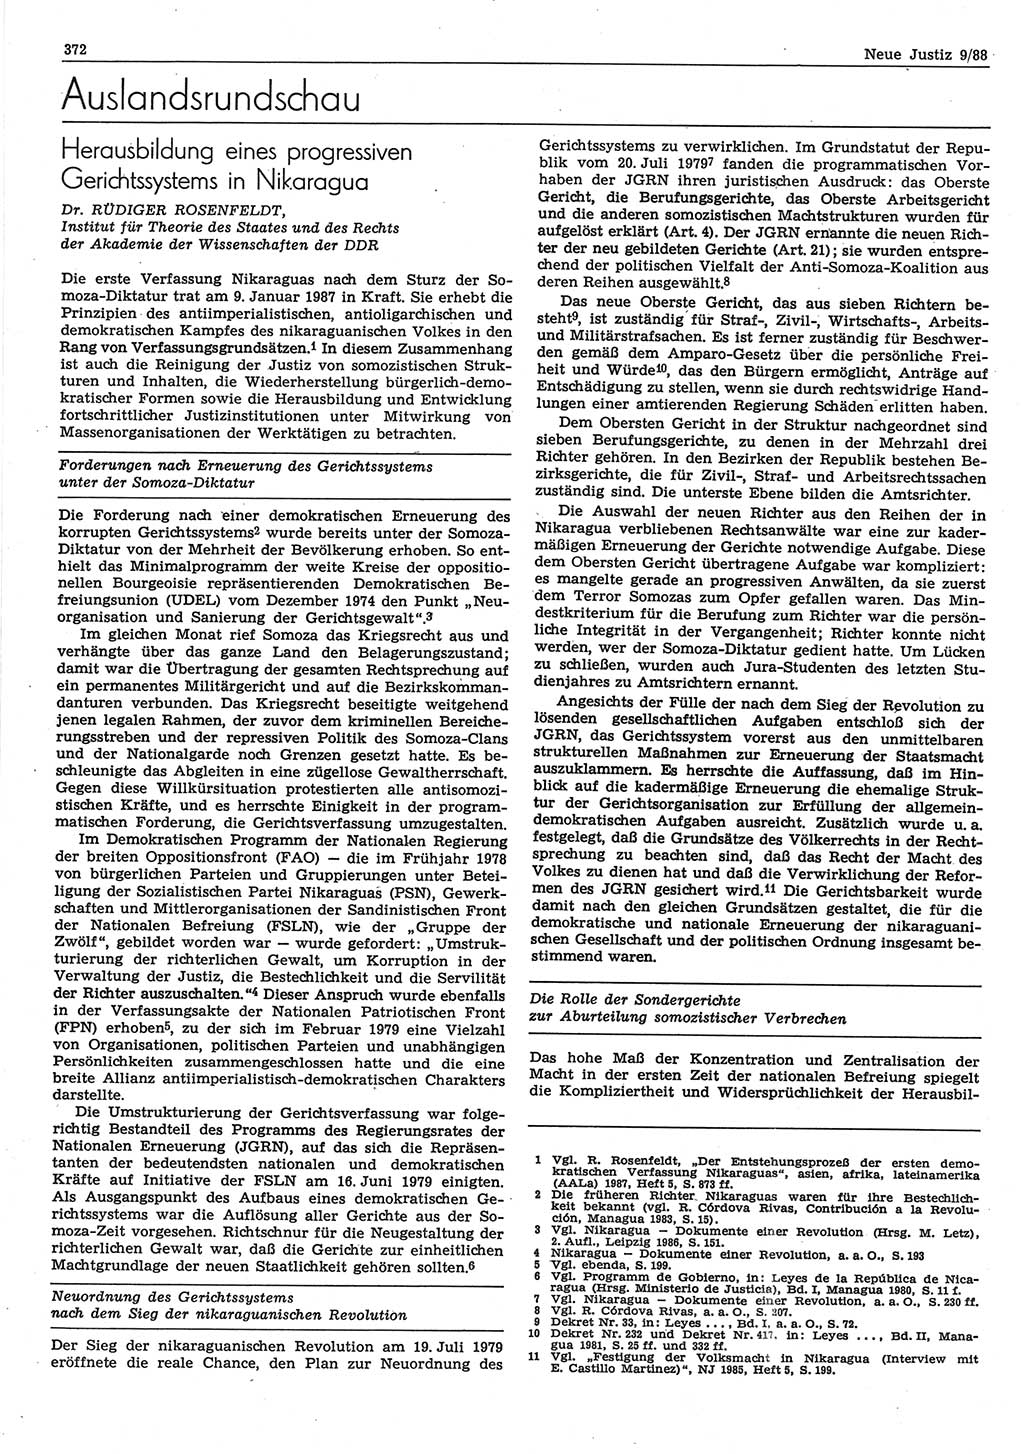 Neue Justiz (NJ), Zeitschrift für sozialistisches Recht und Gesetzlichkeit [Deutsche Demokratische Republik (DDR)], 42. Jahrgang 1988, Seite 372 (NJ DDR 1988, S. 372)